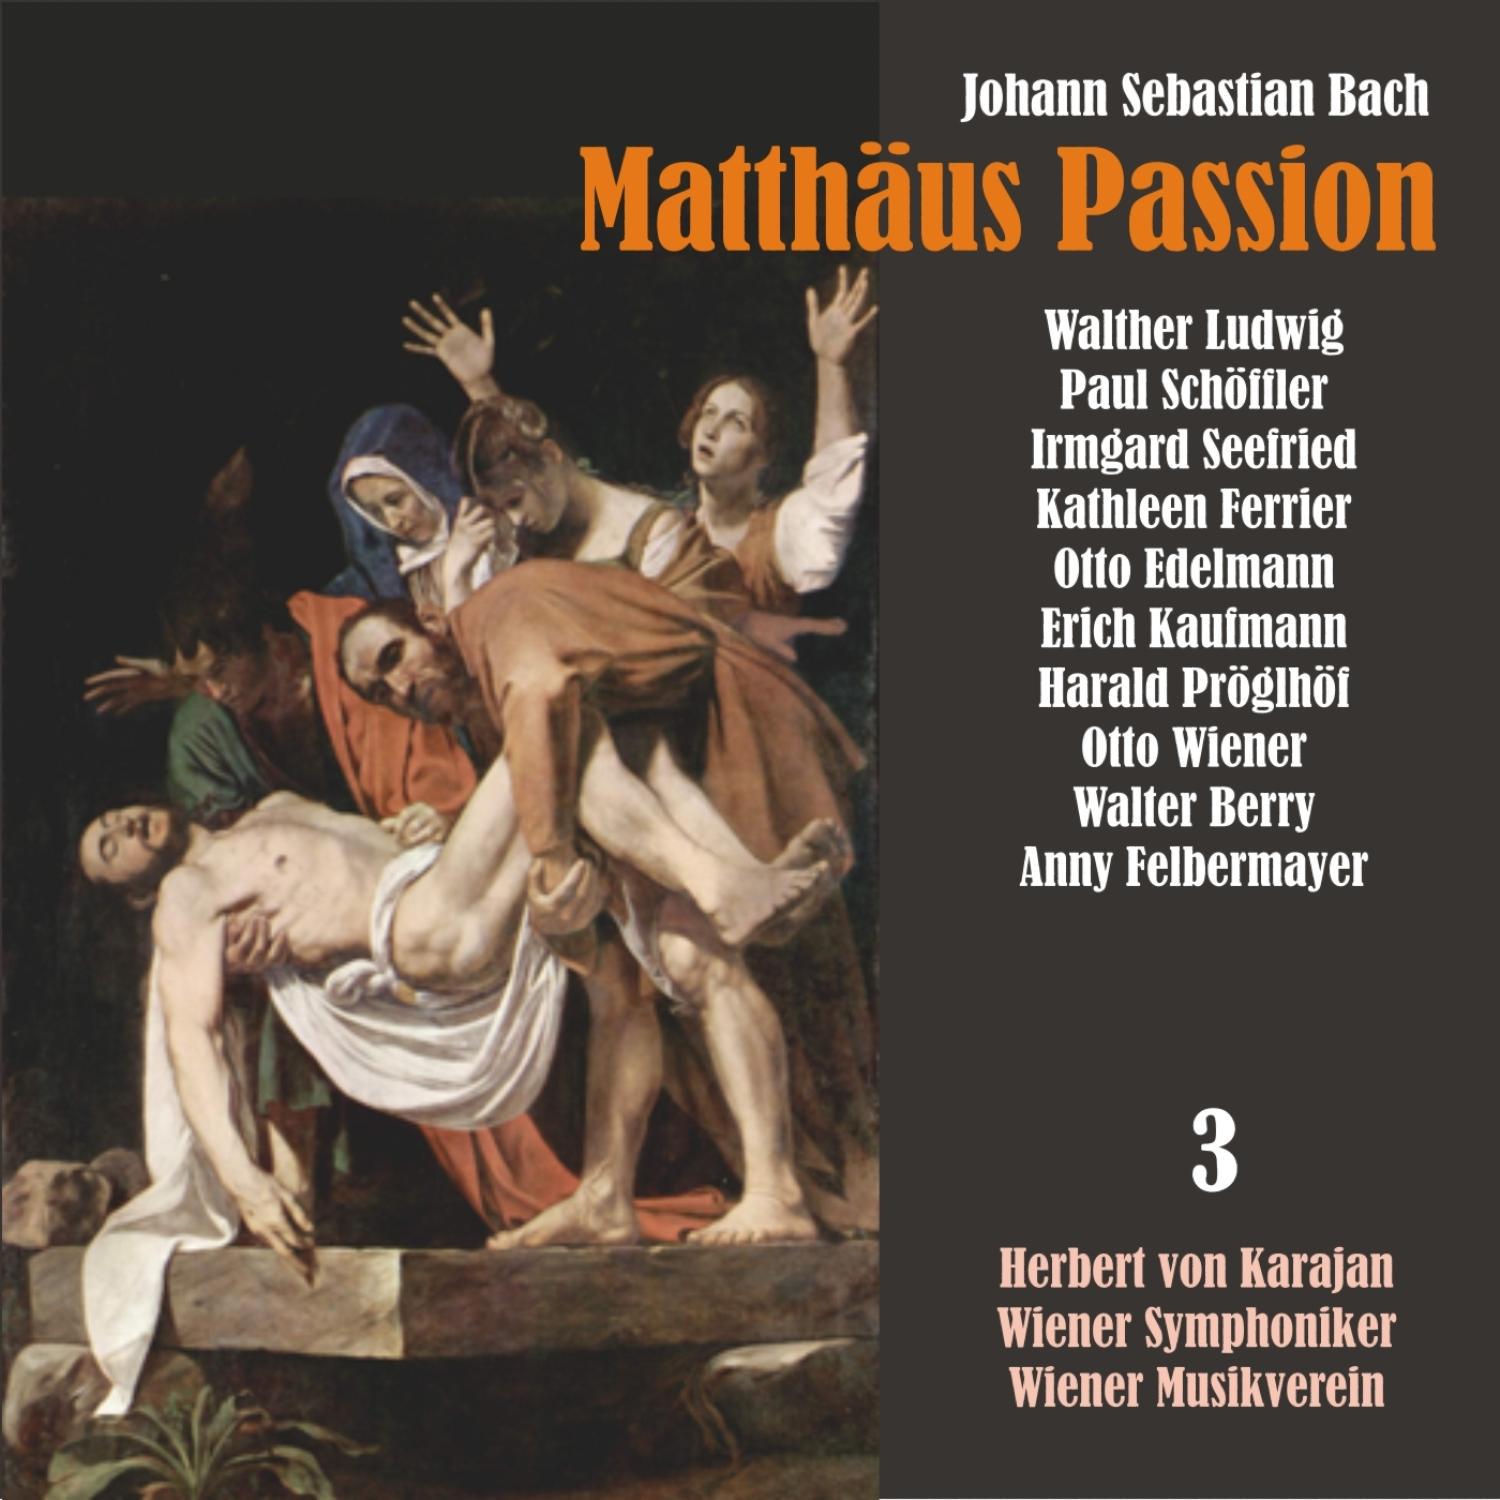 Matthäus Passion, BWV 244: "Ja! freilich will in uns das Fleisch und Blut"